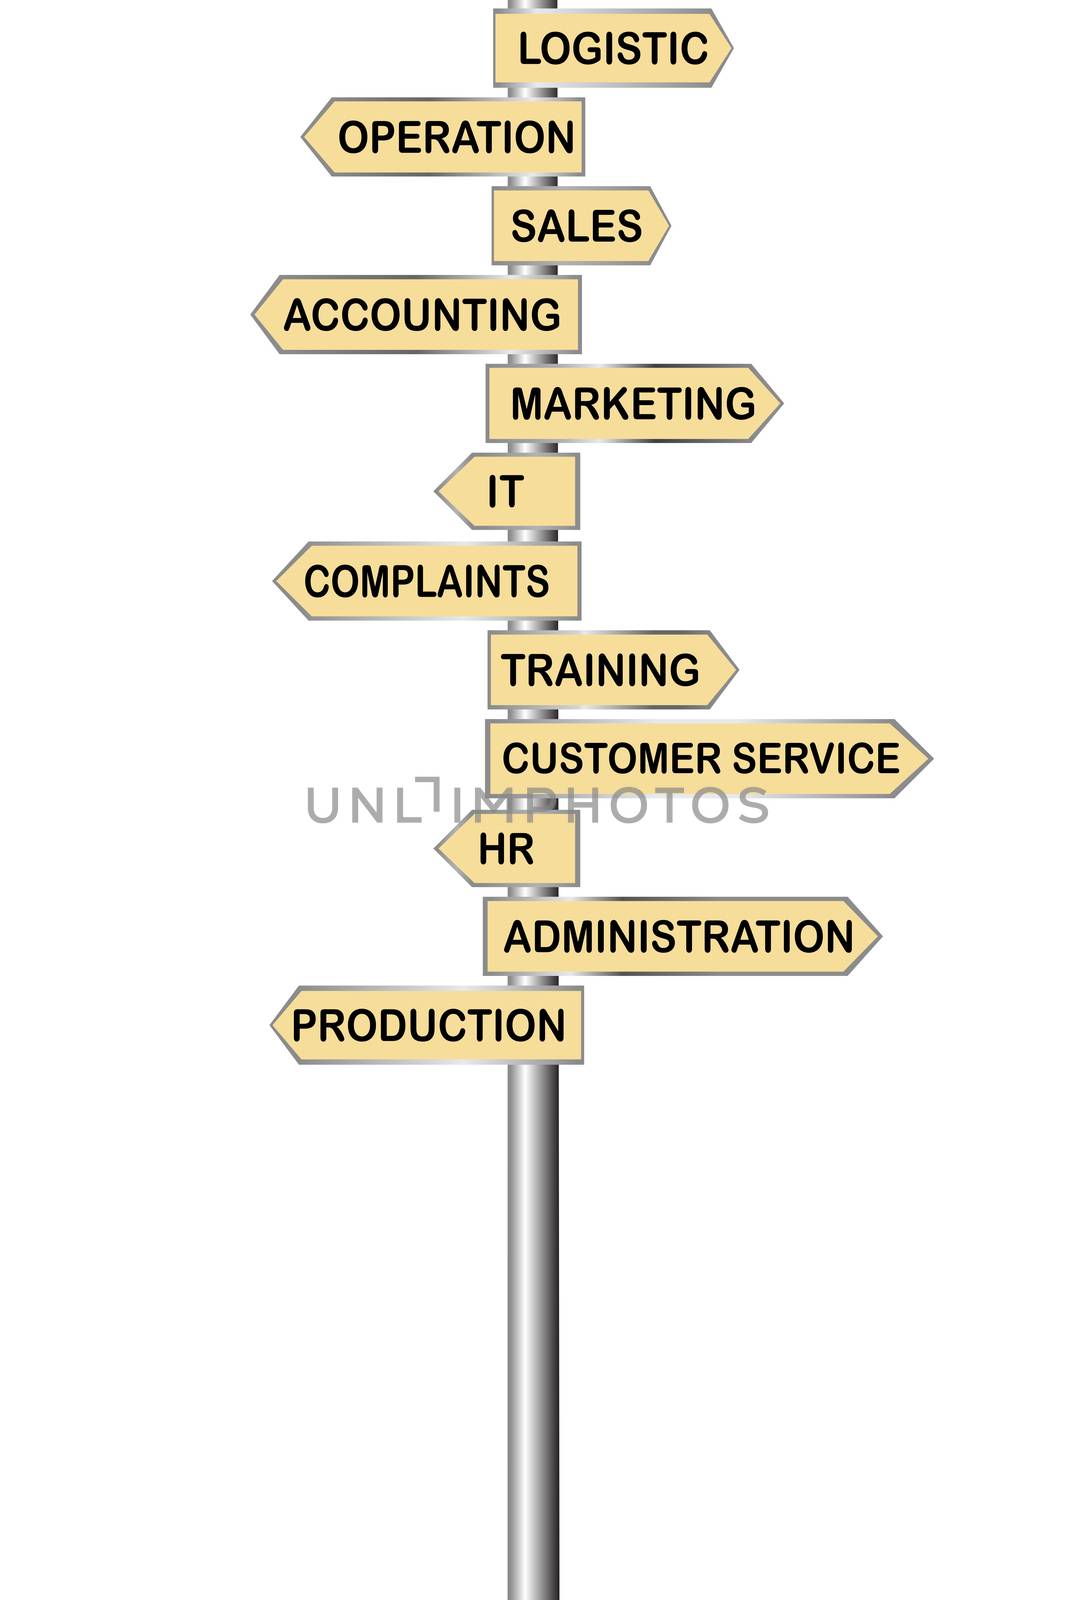 Arrows indicators for company departments